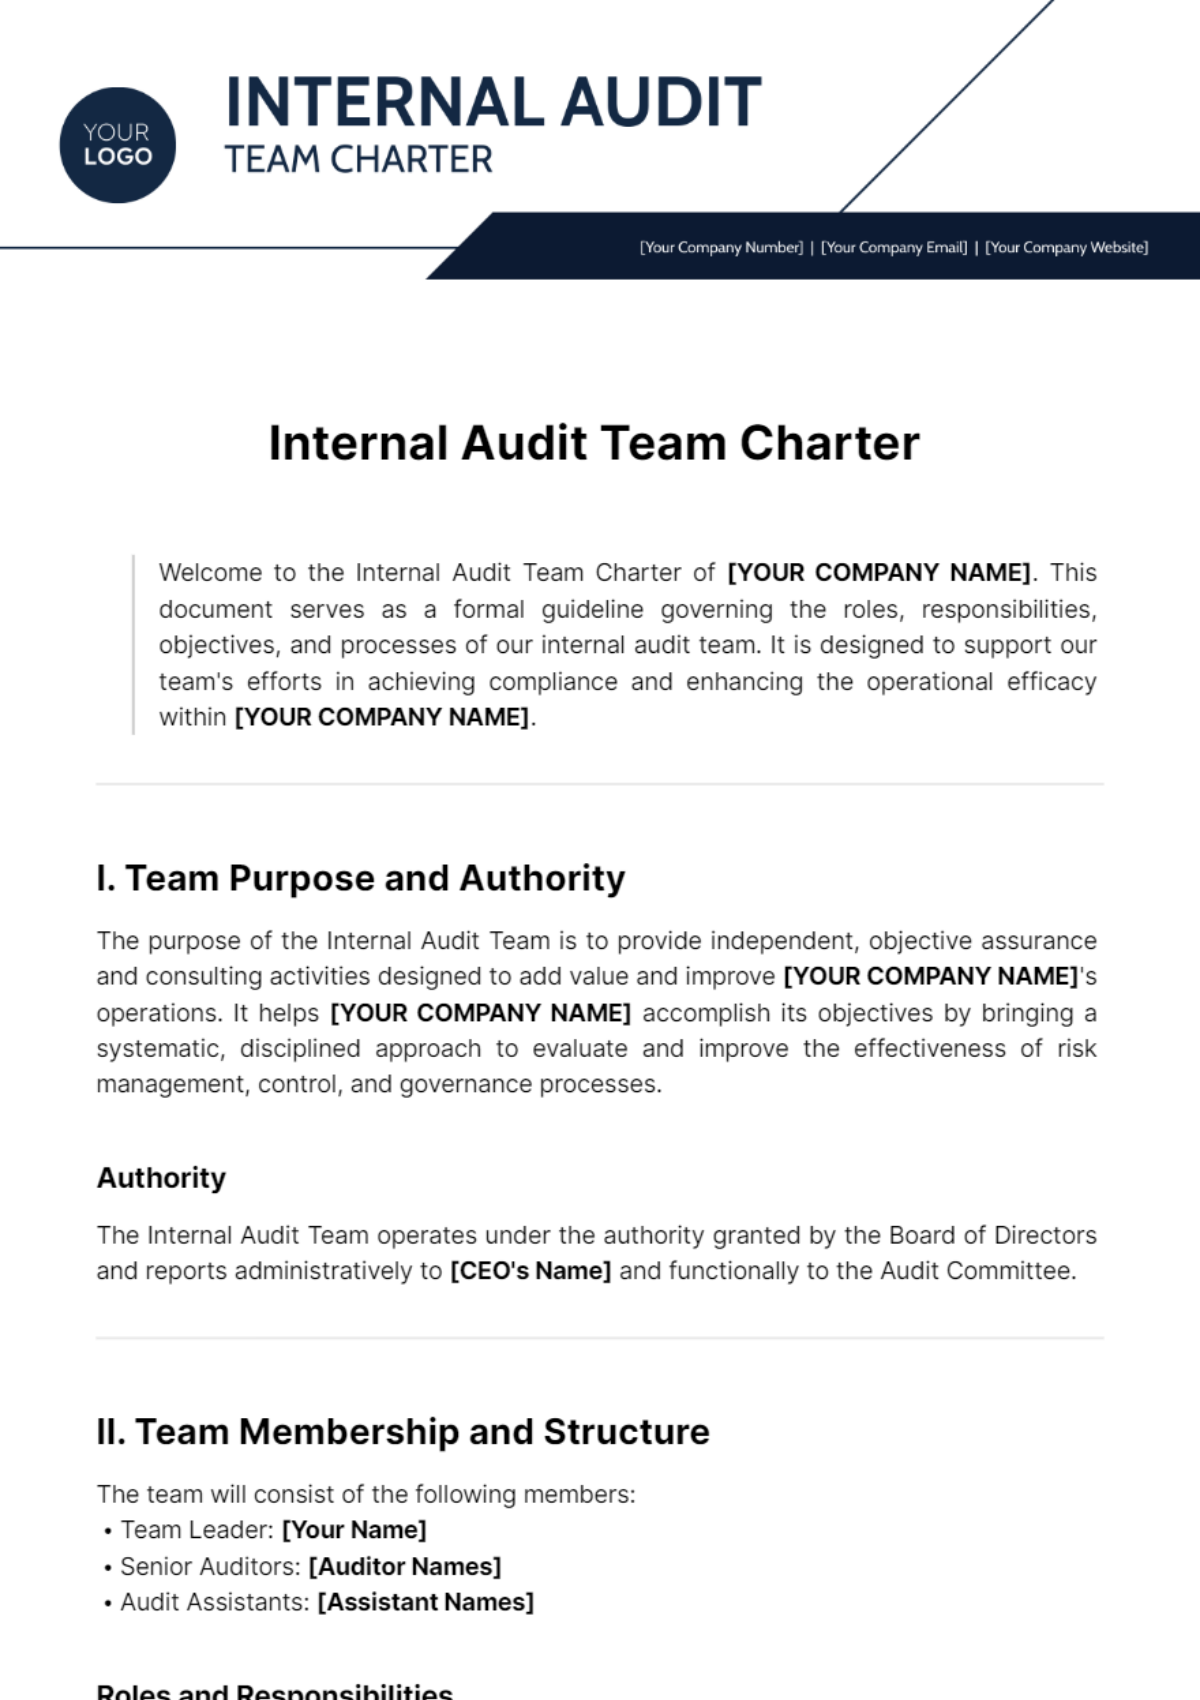 Internal Audit Team Charter Template